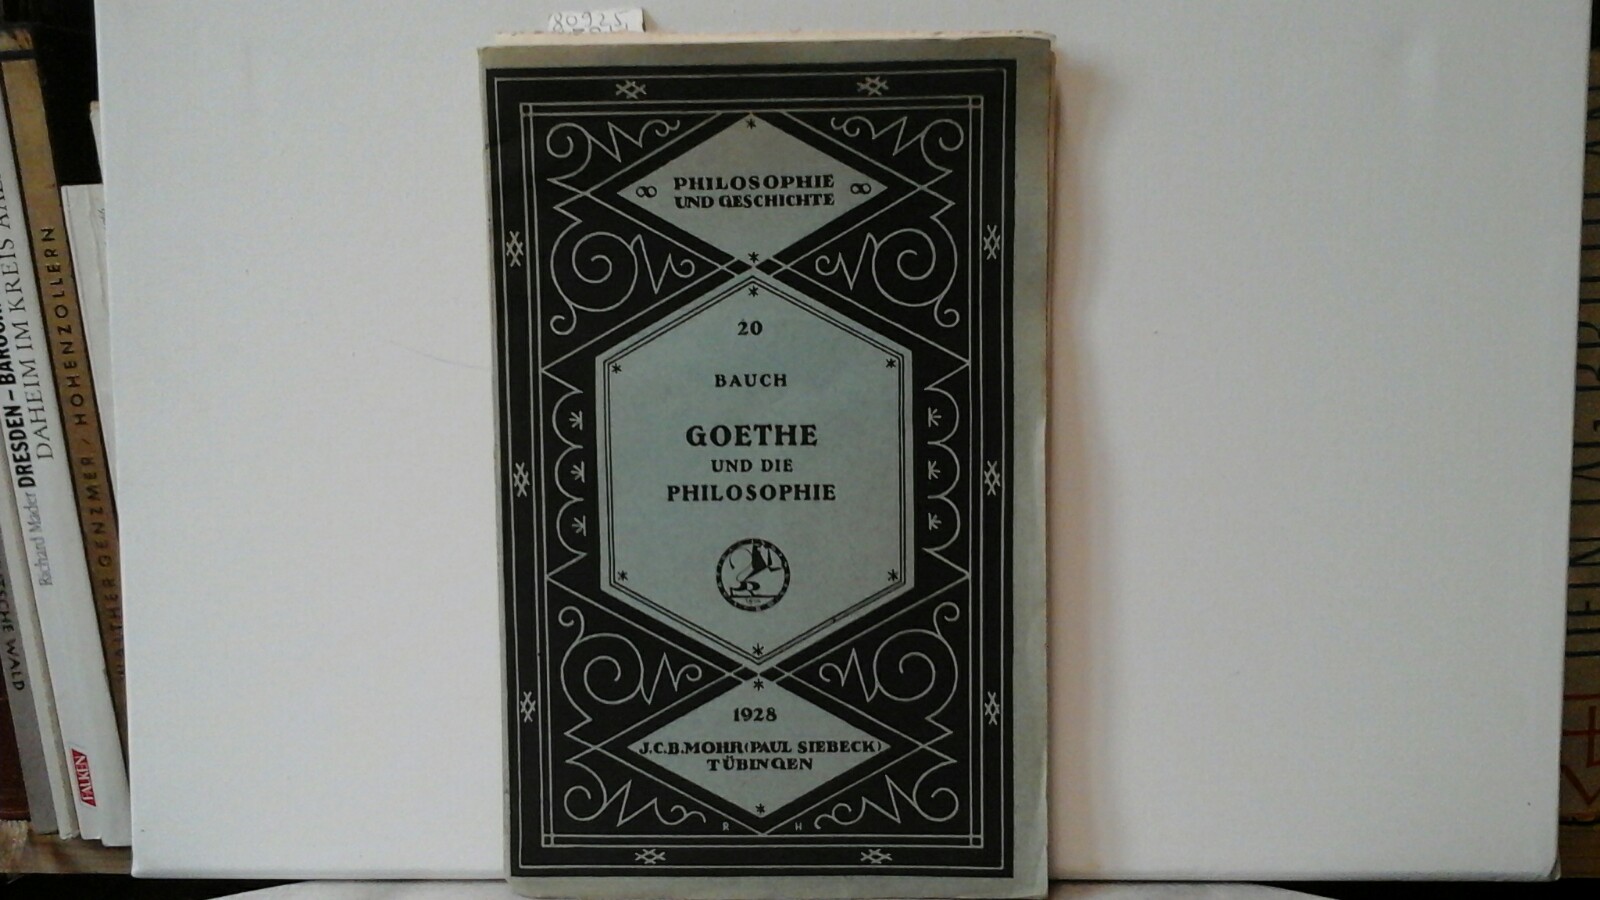 Goethe und die Philosophie.